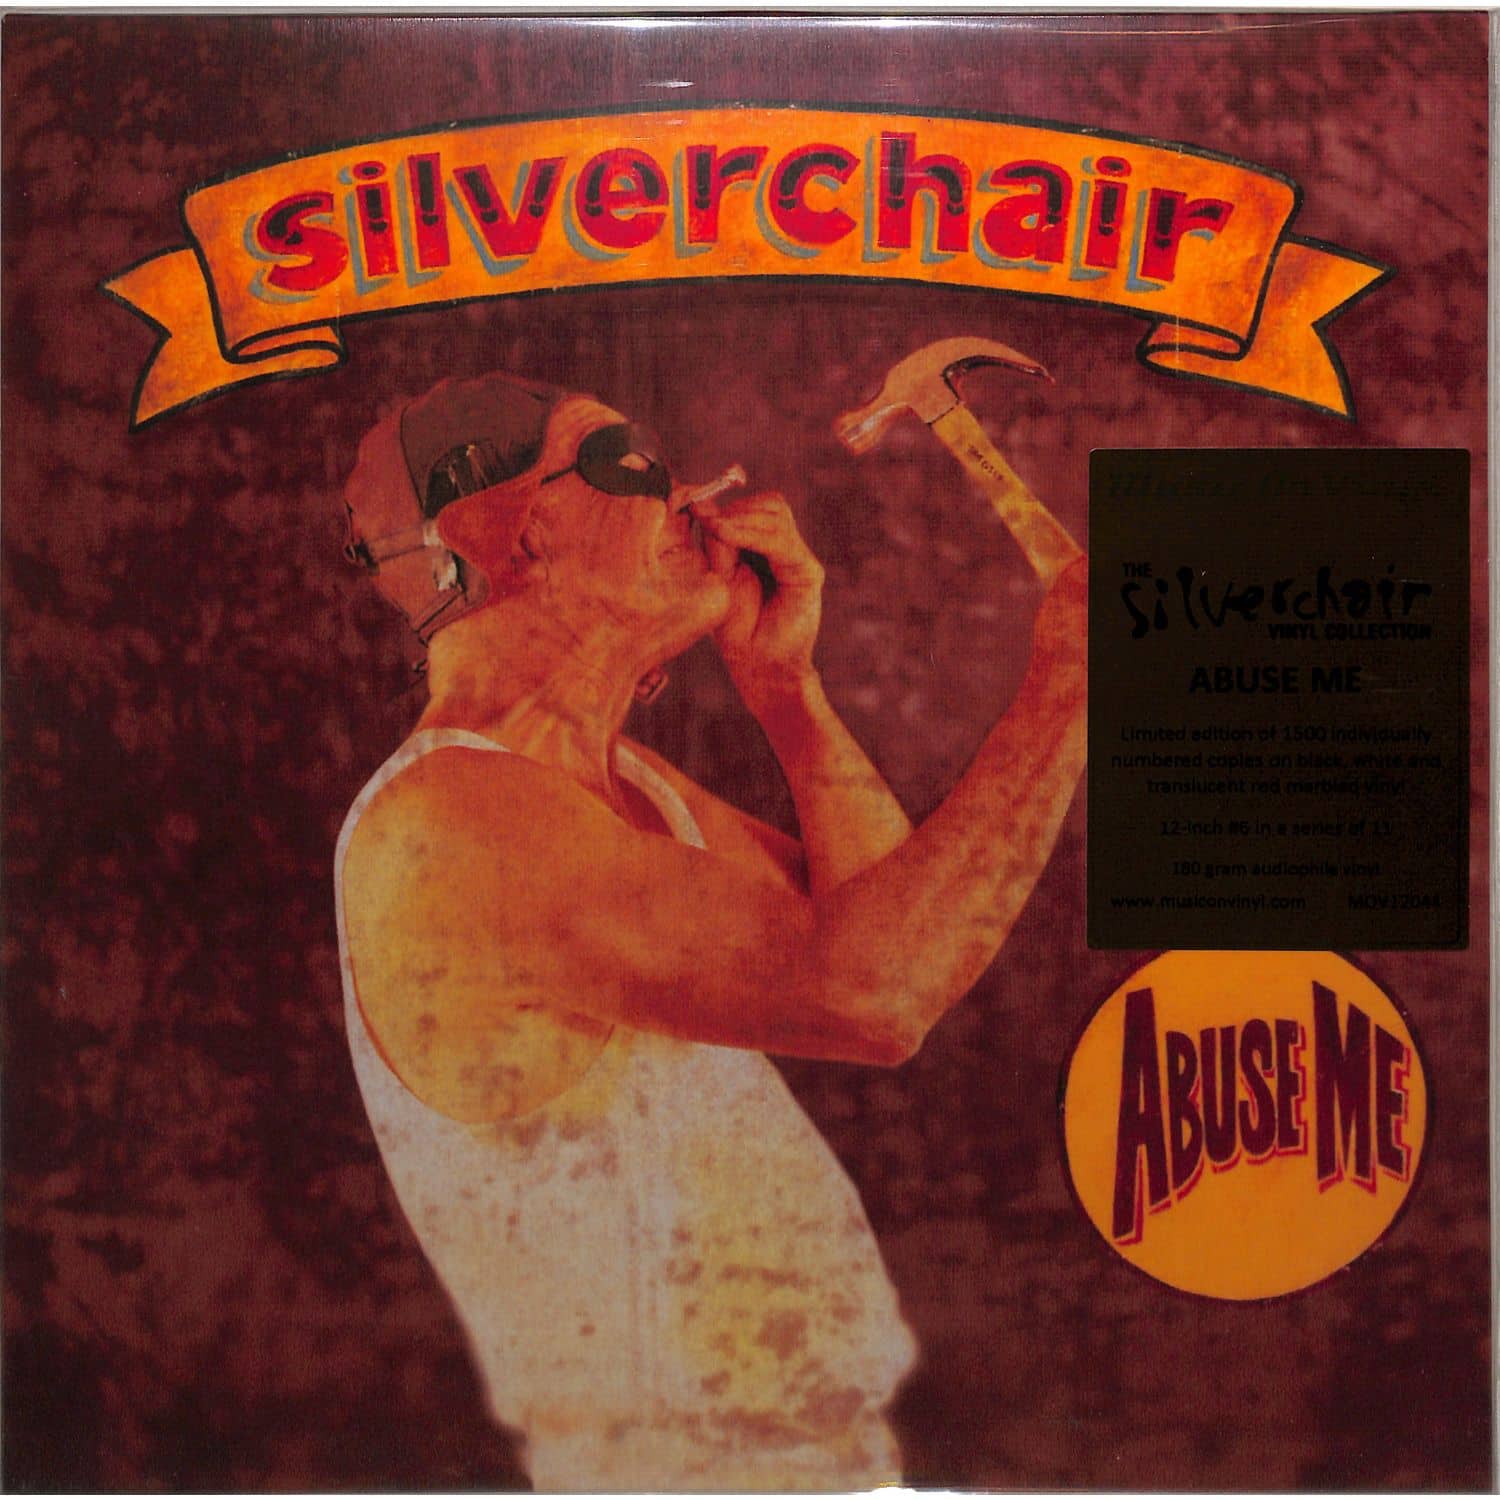 Silverchair - ABUSE ME 